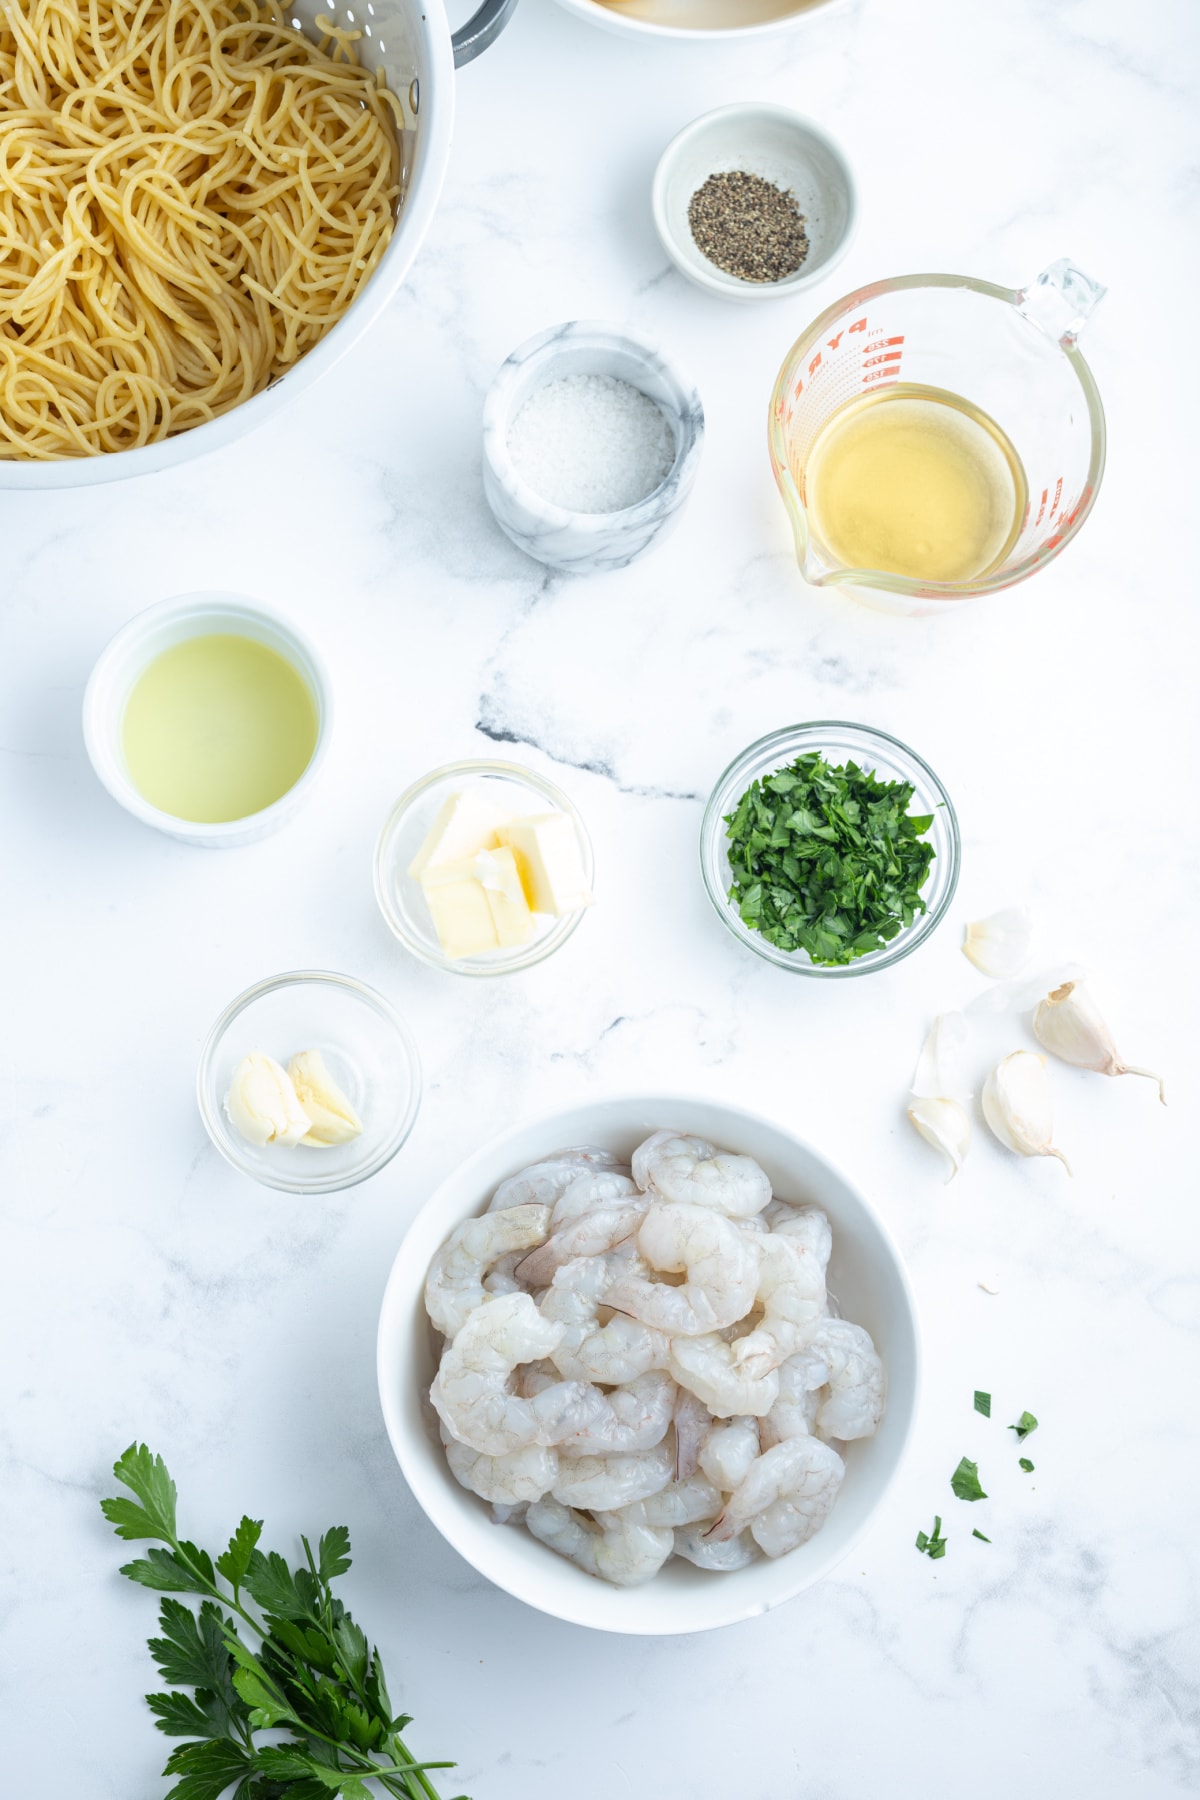 ingredients displayed for making shrimp scampi